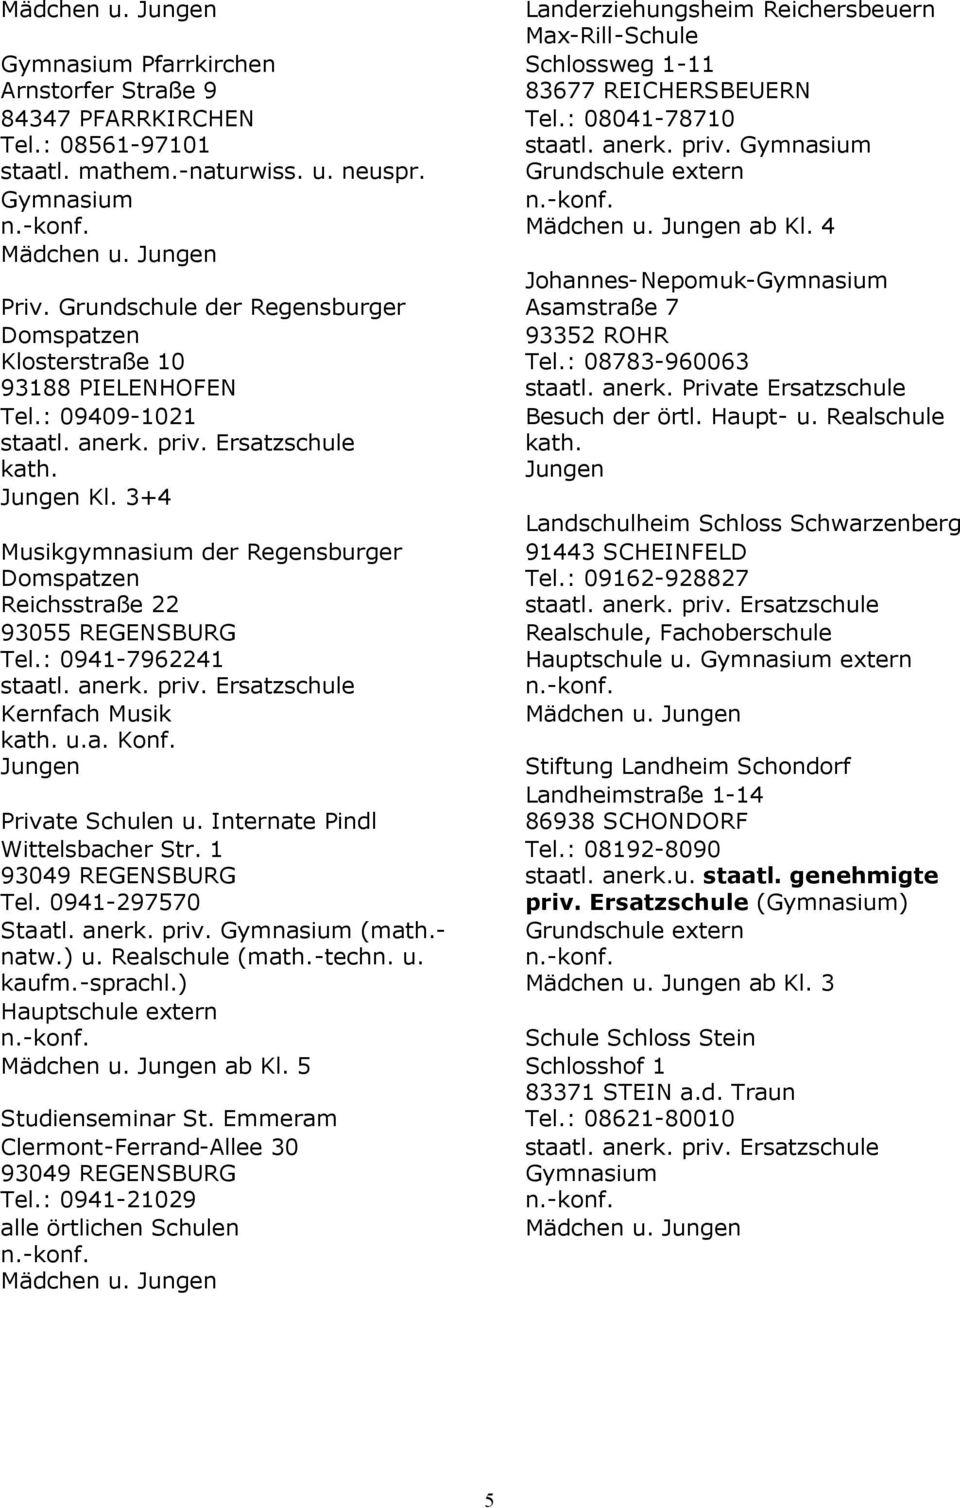 1 93049 REGENSBURG Tel. 0941-297570 Staatl. anerk. priv. (math.- natw.) u. Realschule (math.-techn. u. kaufm.-sprachl.) Hauptschule extern ab Kl. 5 Studienseminar St.